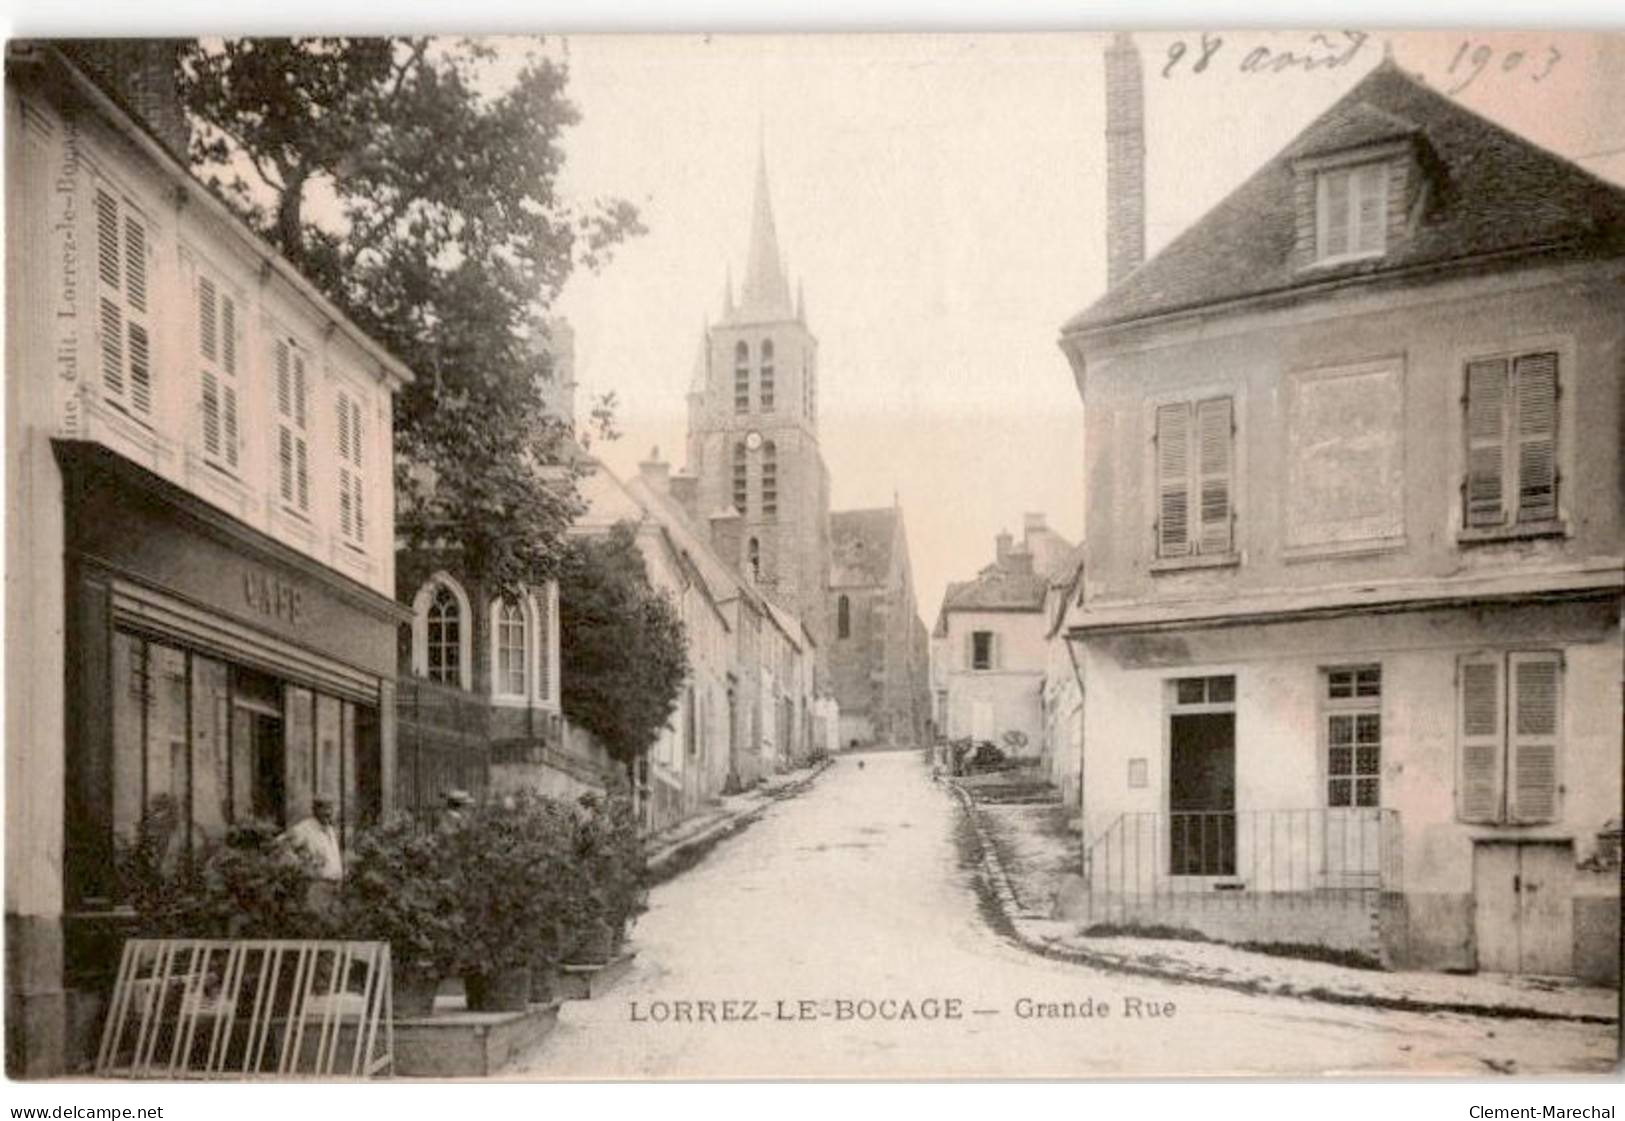 LORREZ-le-BOCAGE: Grande Rue - Lorrez Le Bocage Preaux